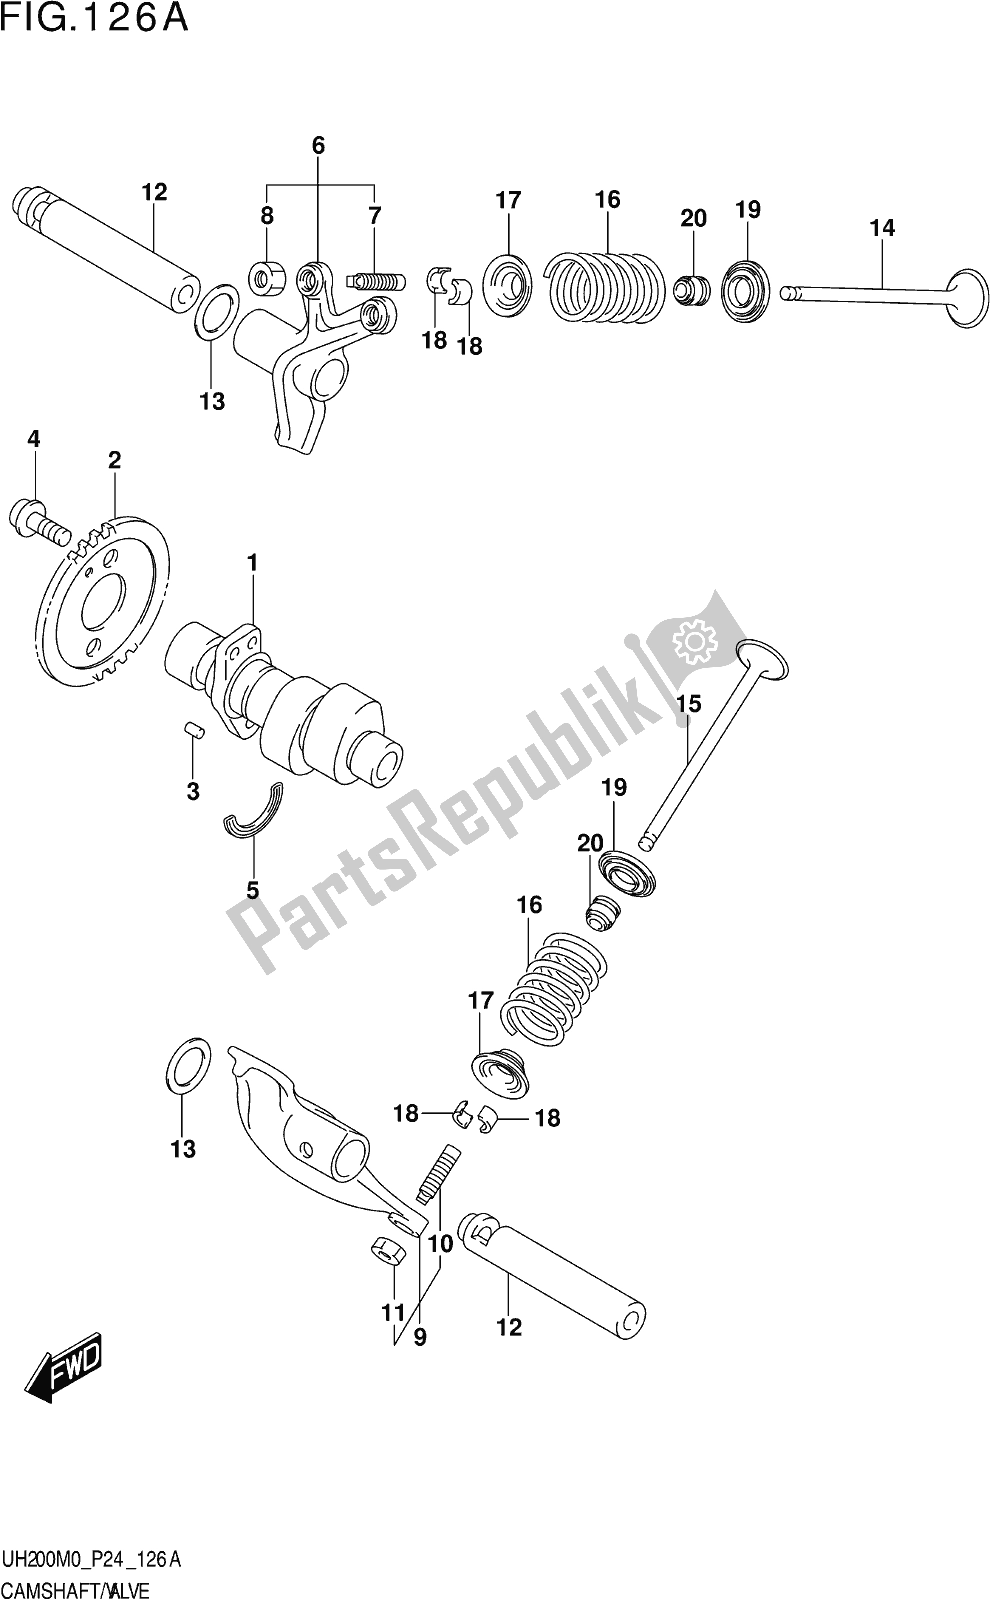 Alle onderdelen voor de Fig. 126a Camshaft/valve van de Suzuki UH 200 2020